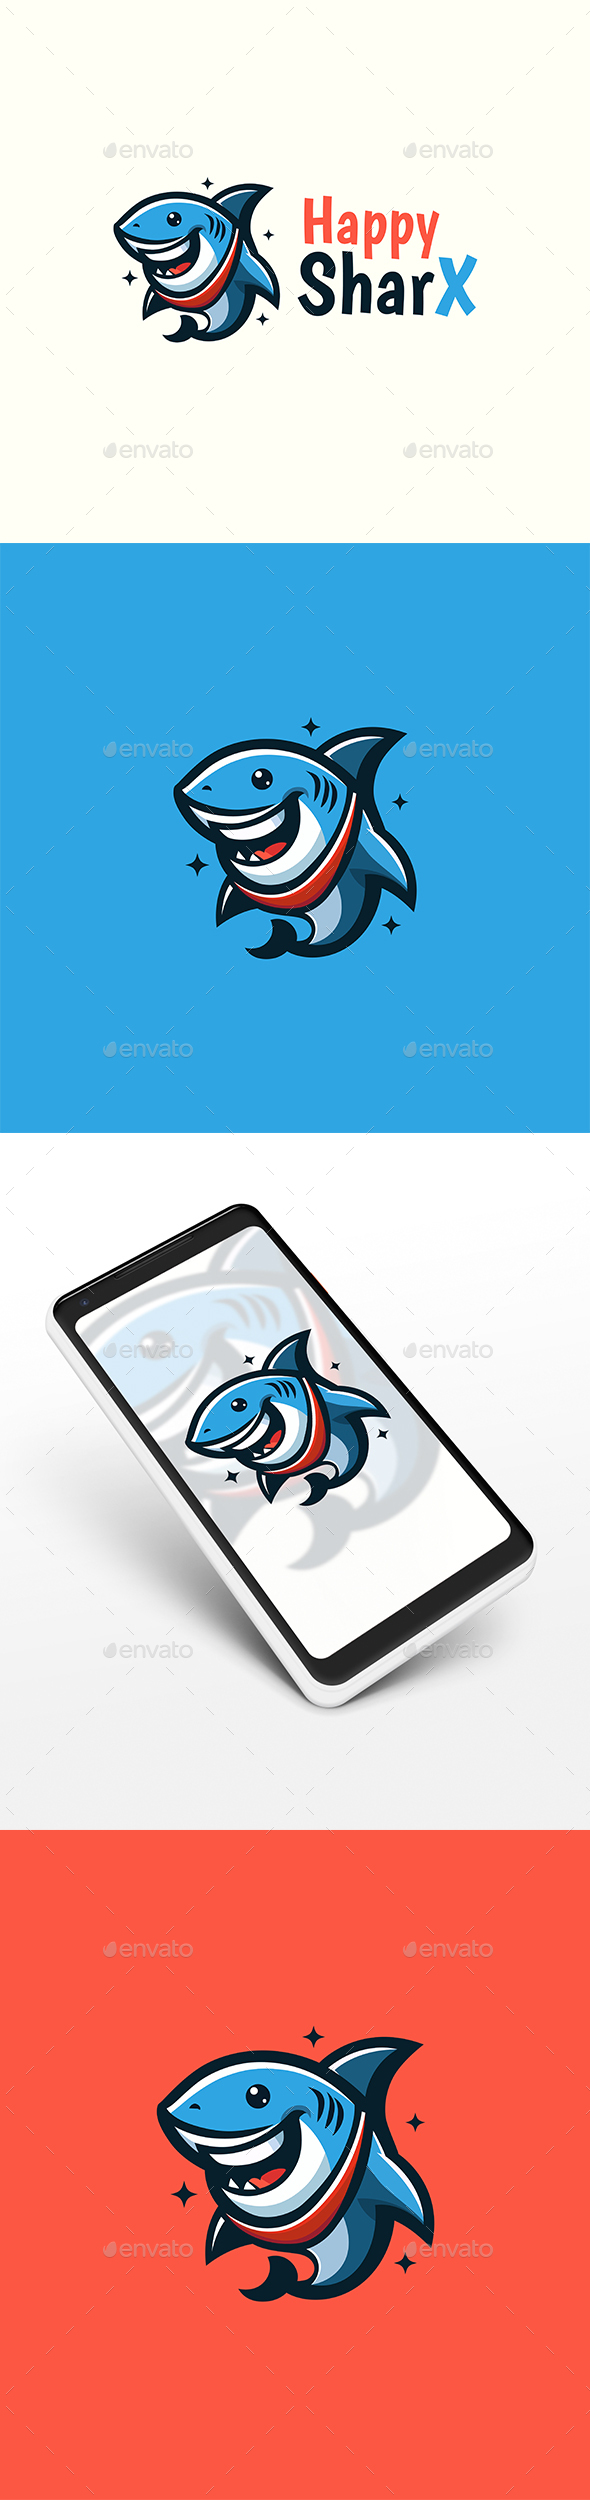 [DOWNLOAD]Happy Shark Logo